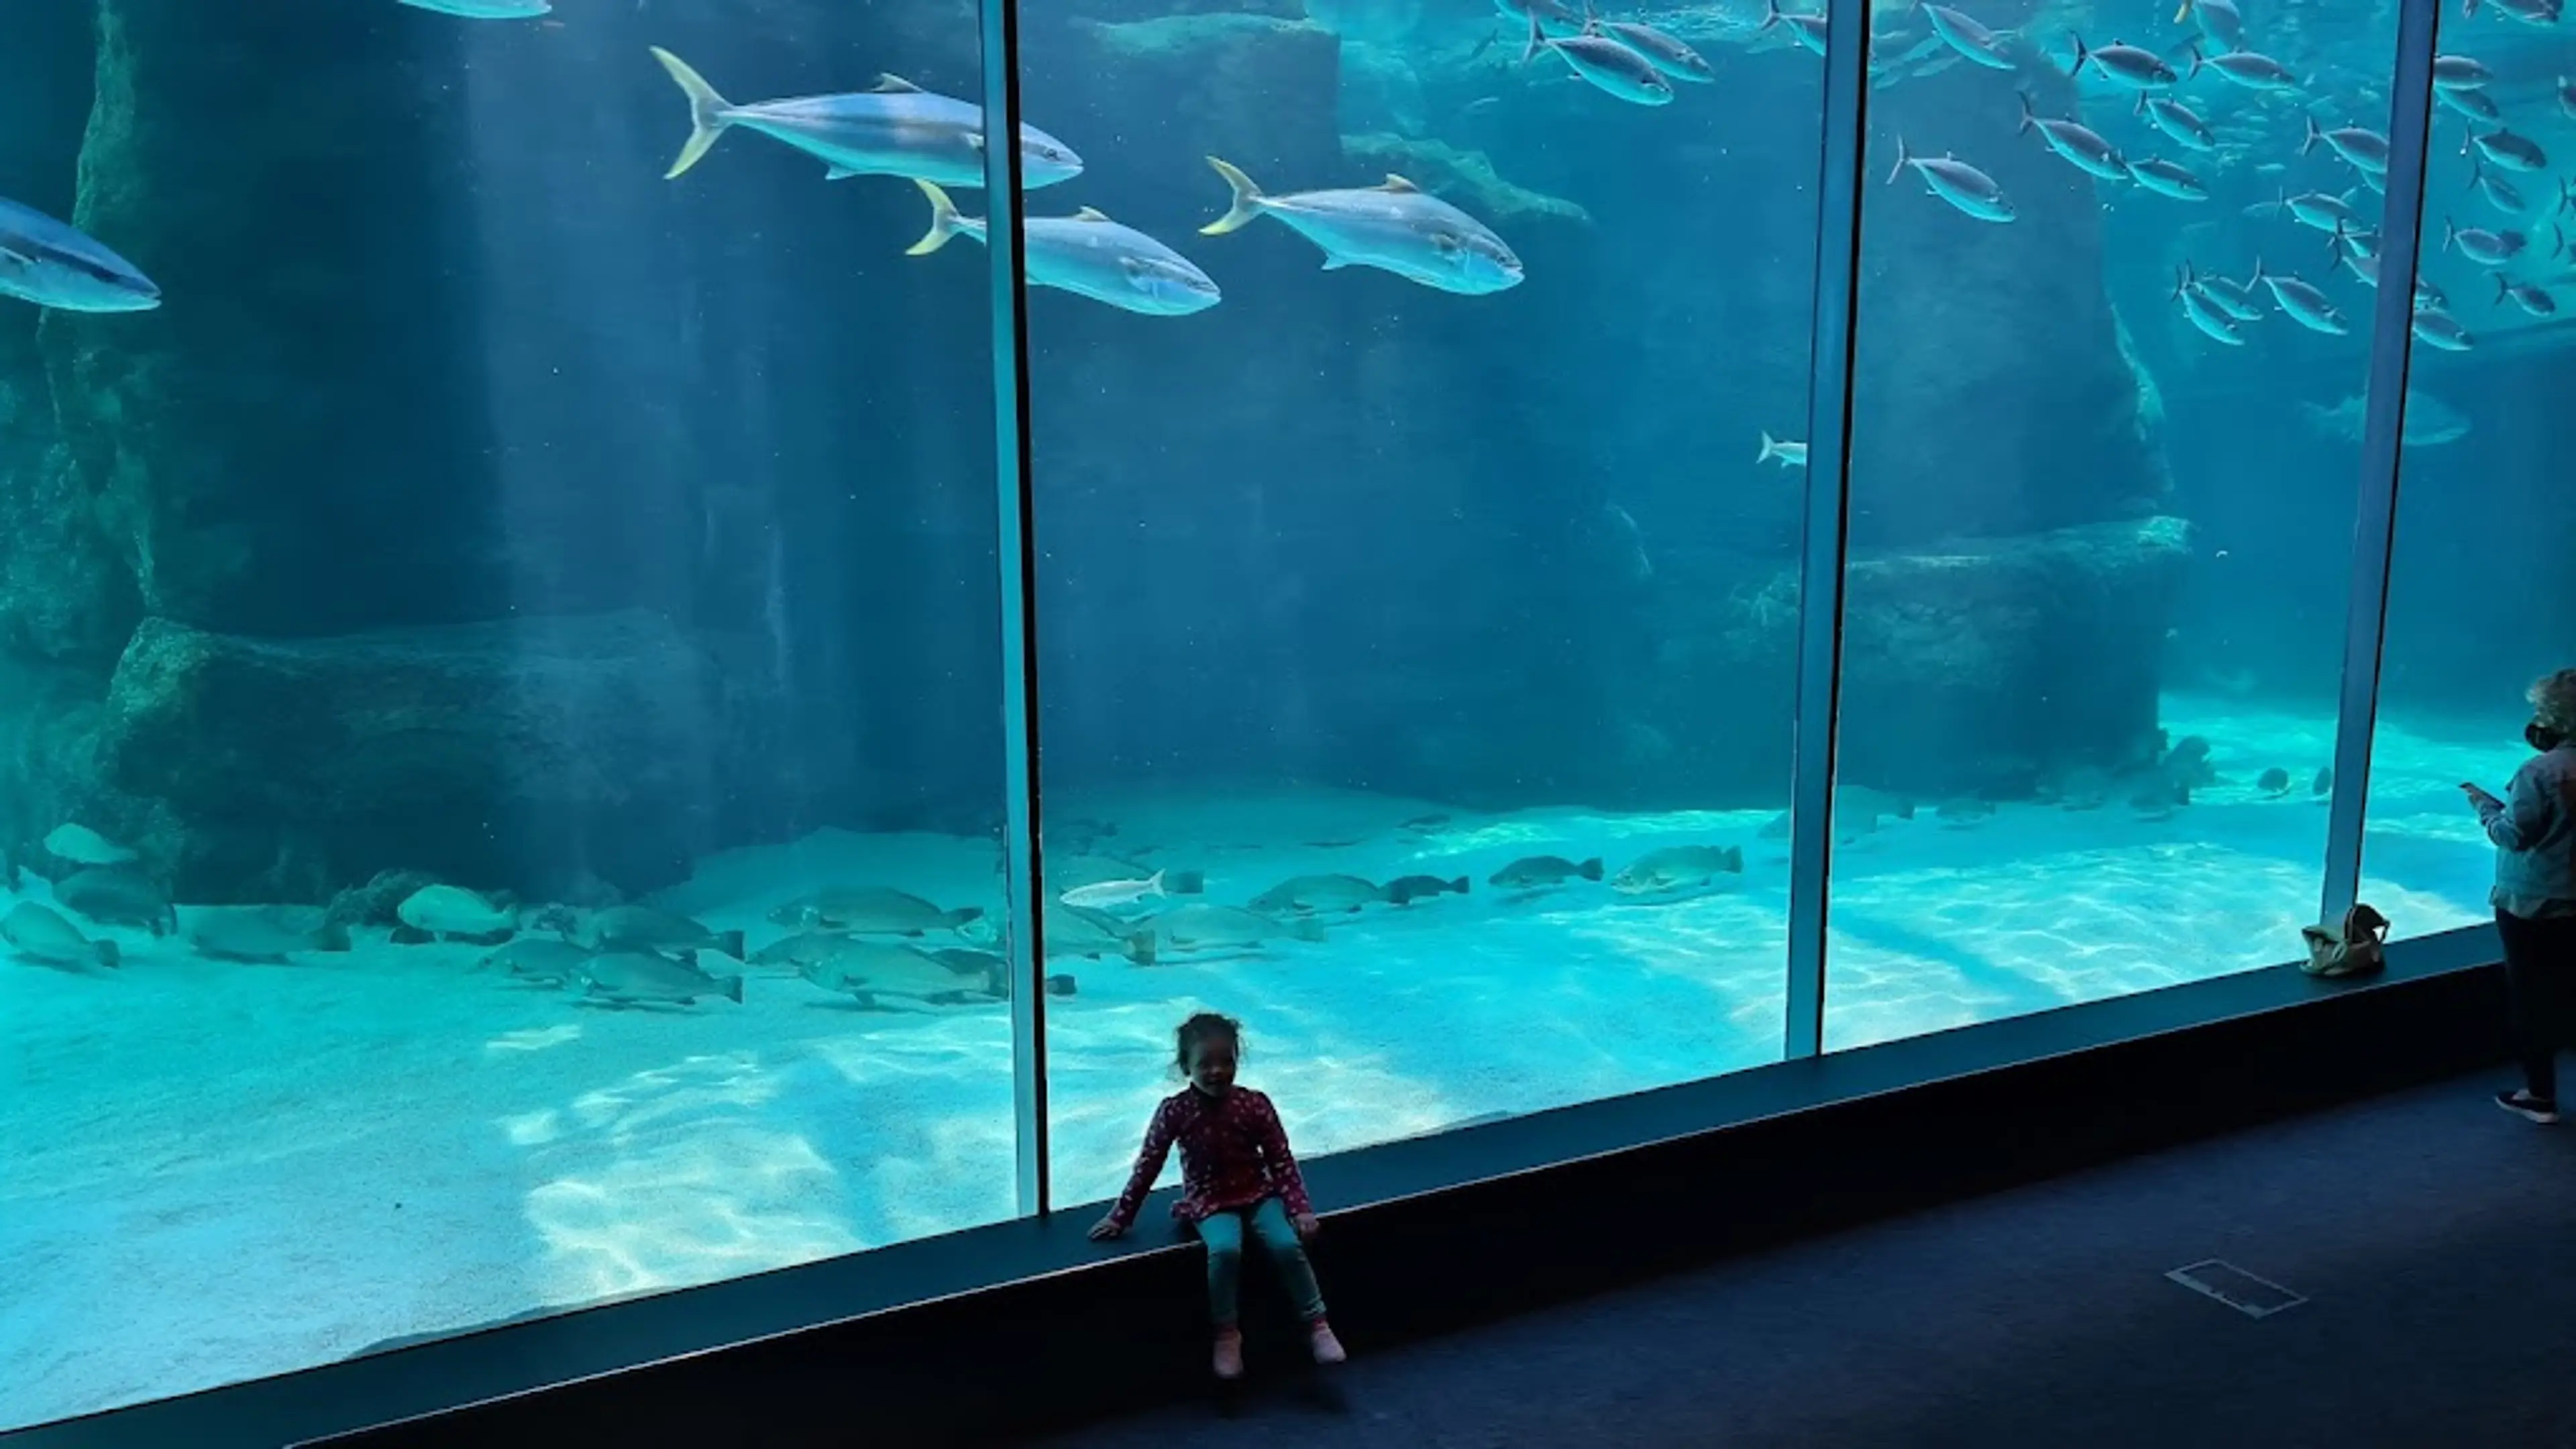 Two Oceans Aquarium